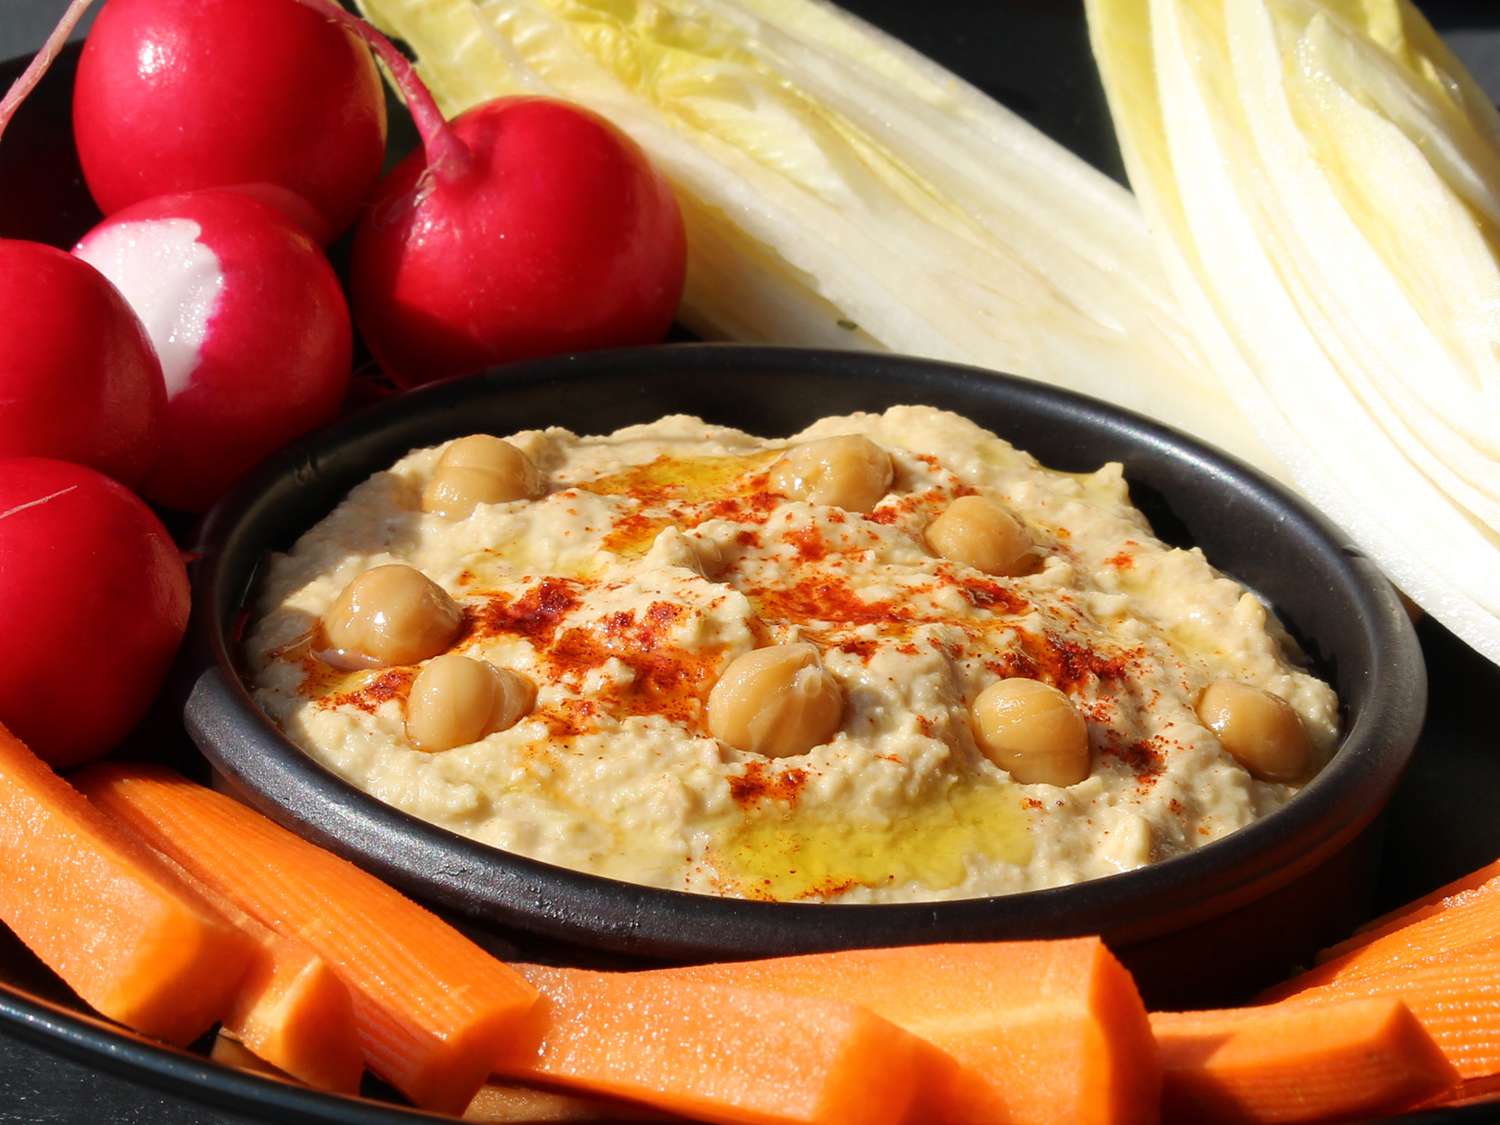 Hummus Trung Đông đích thực (Chummus)